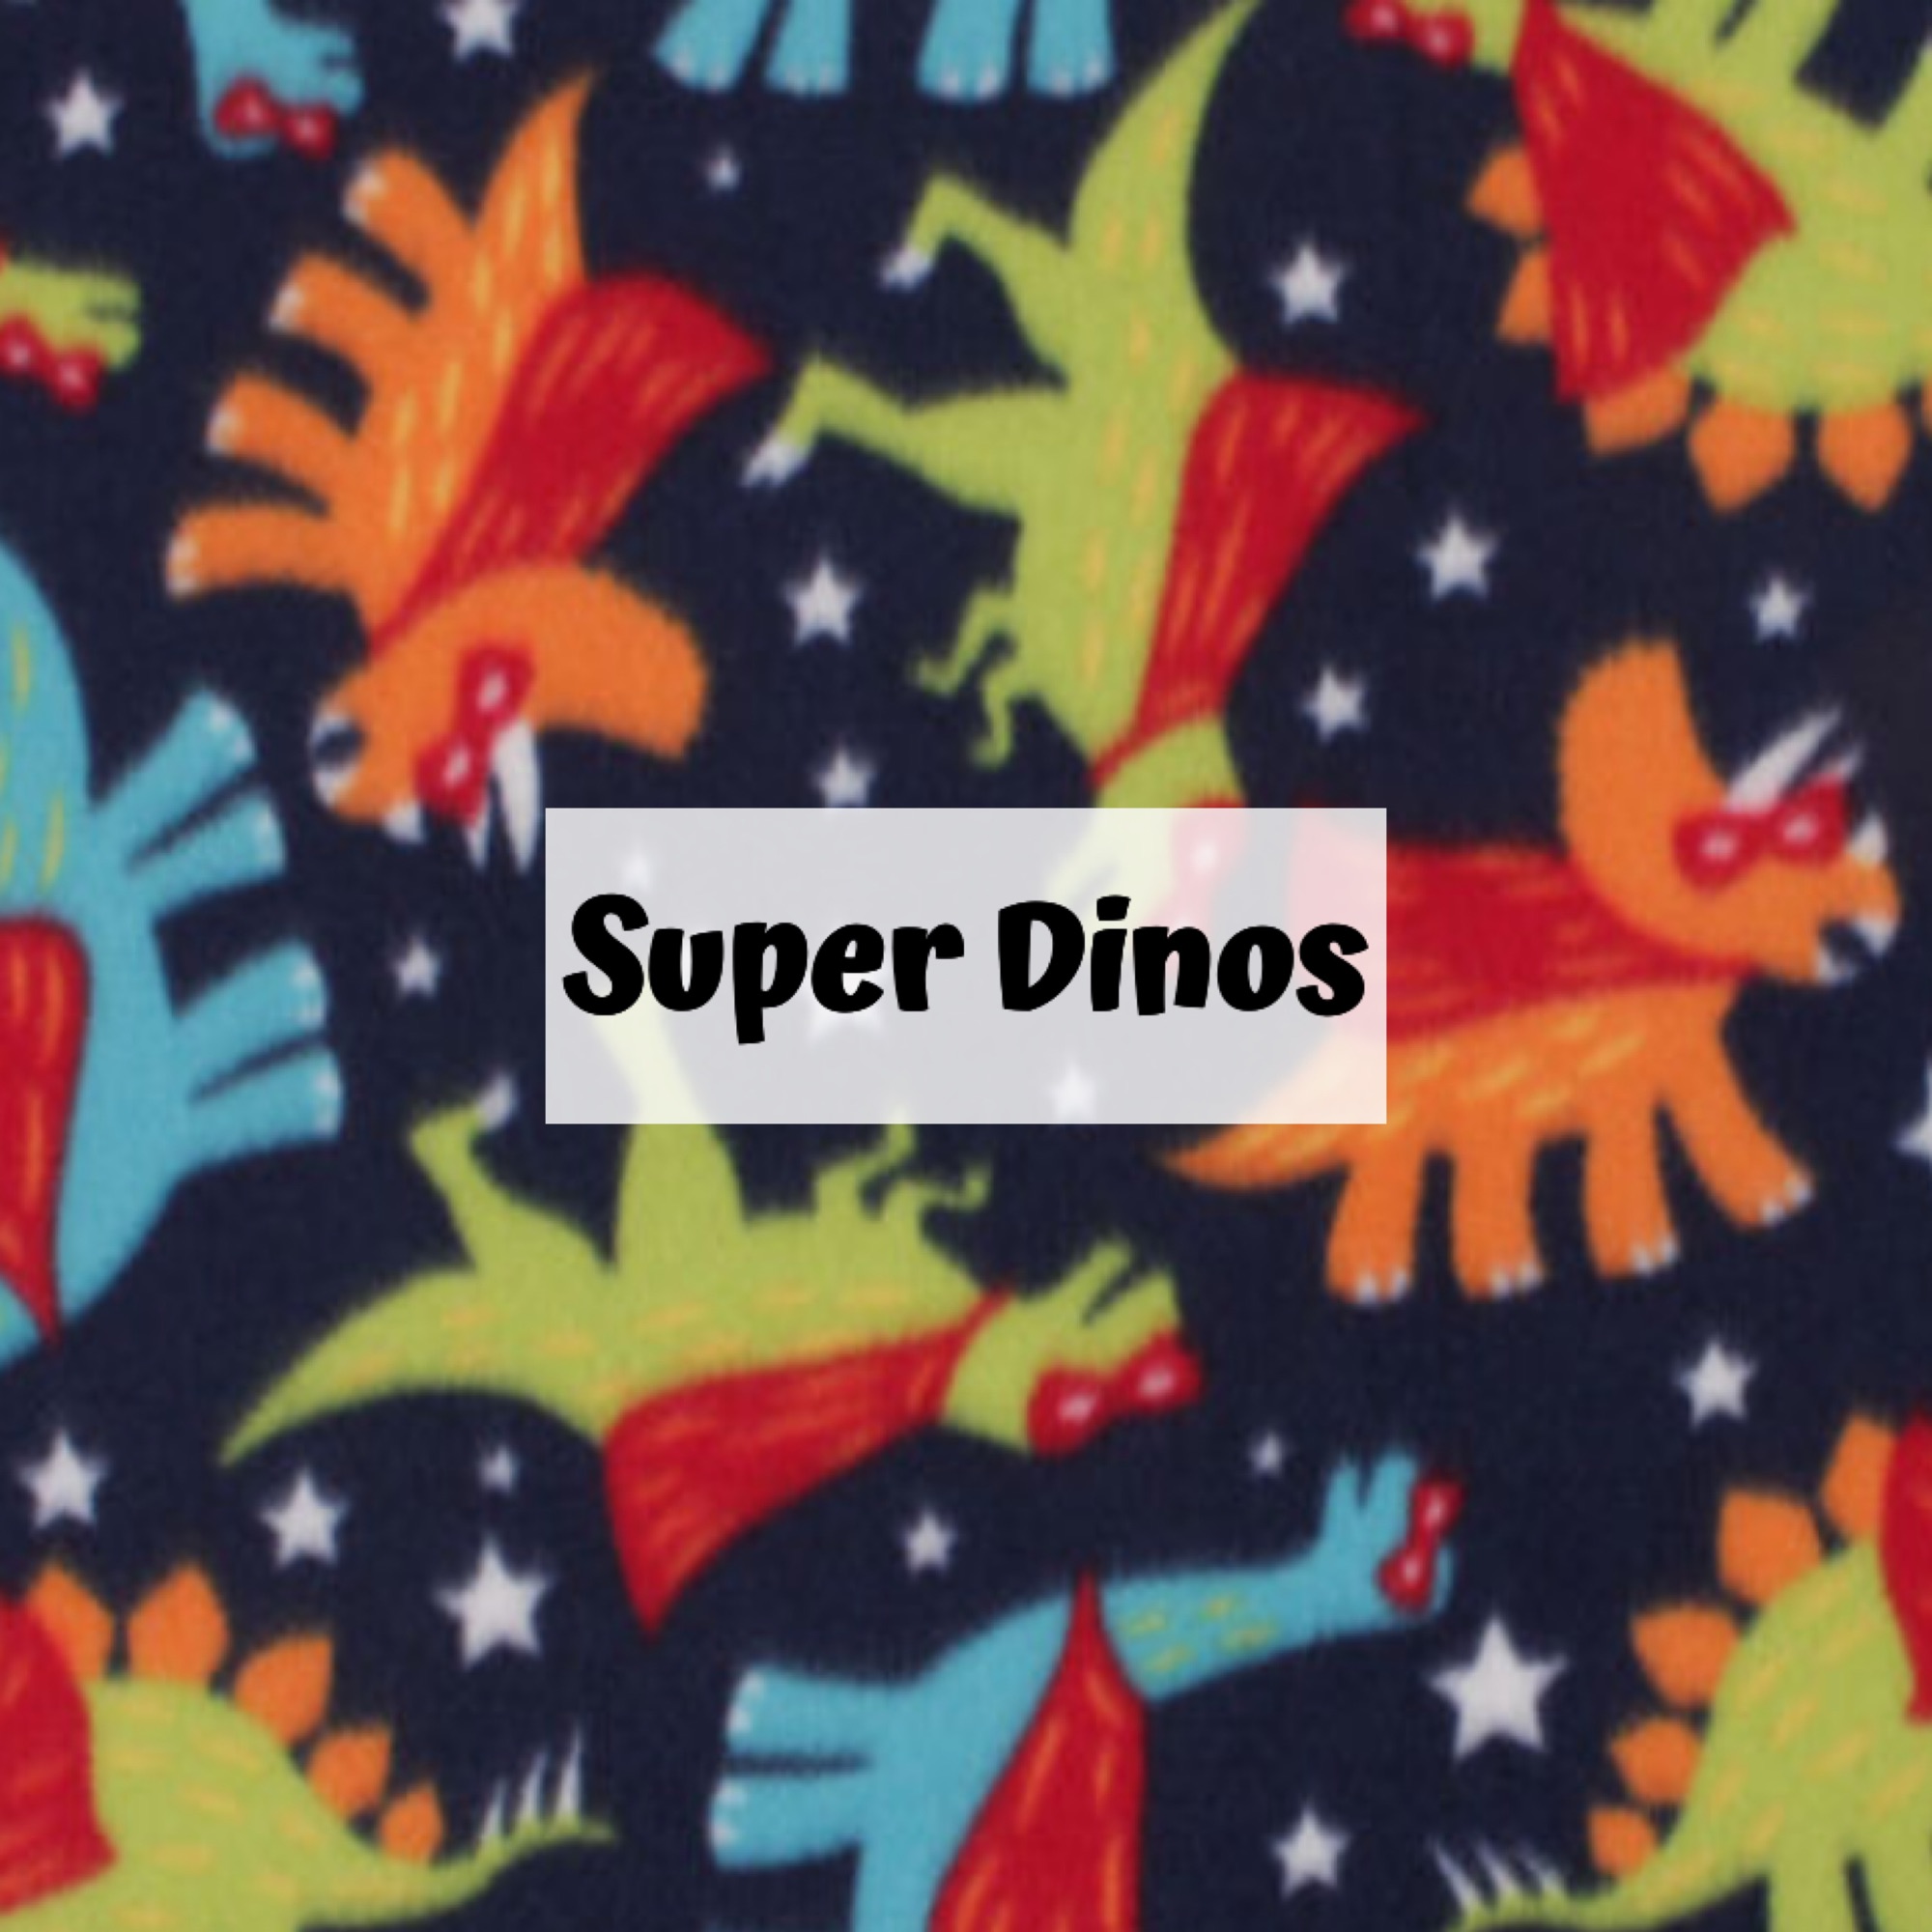 Super Dinos